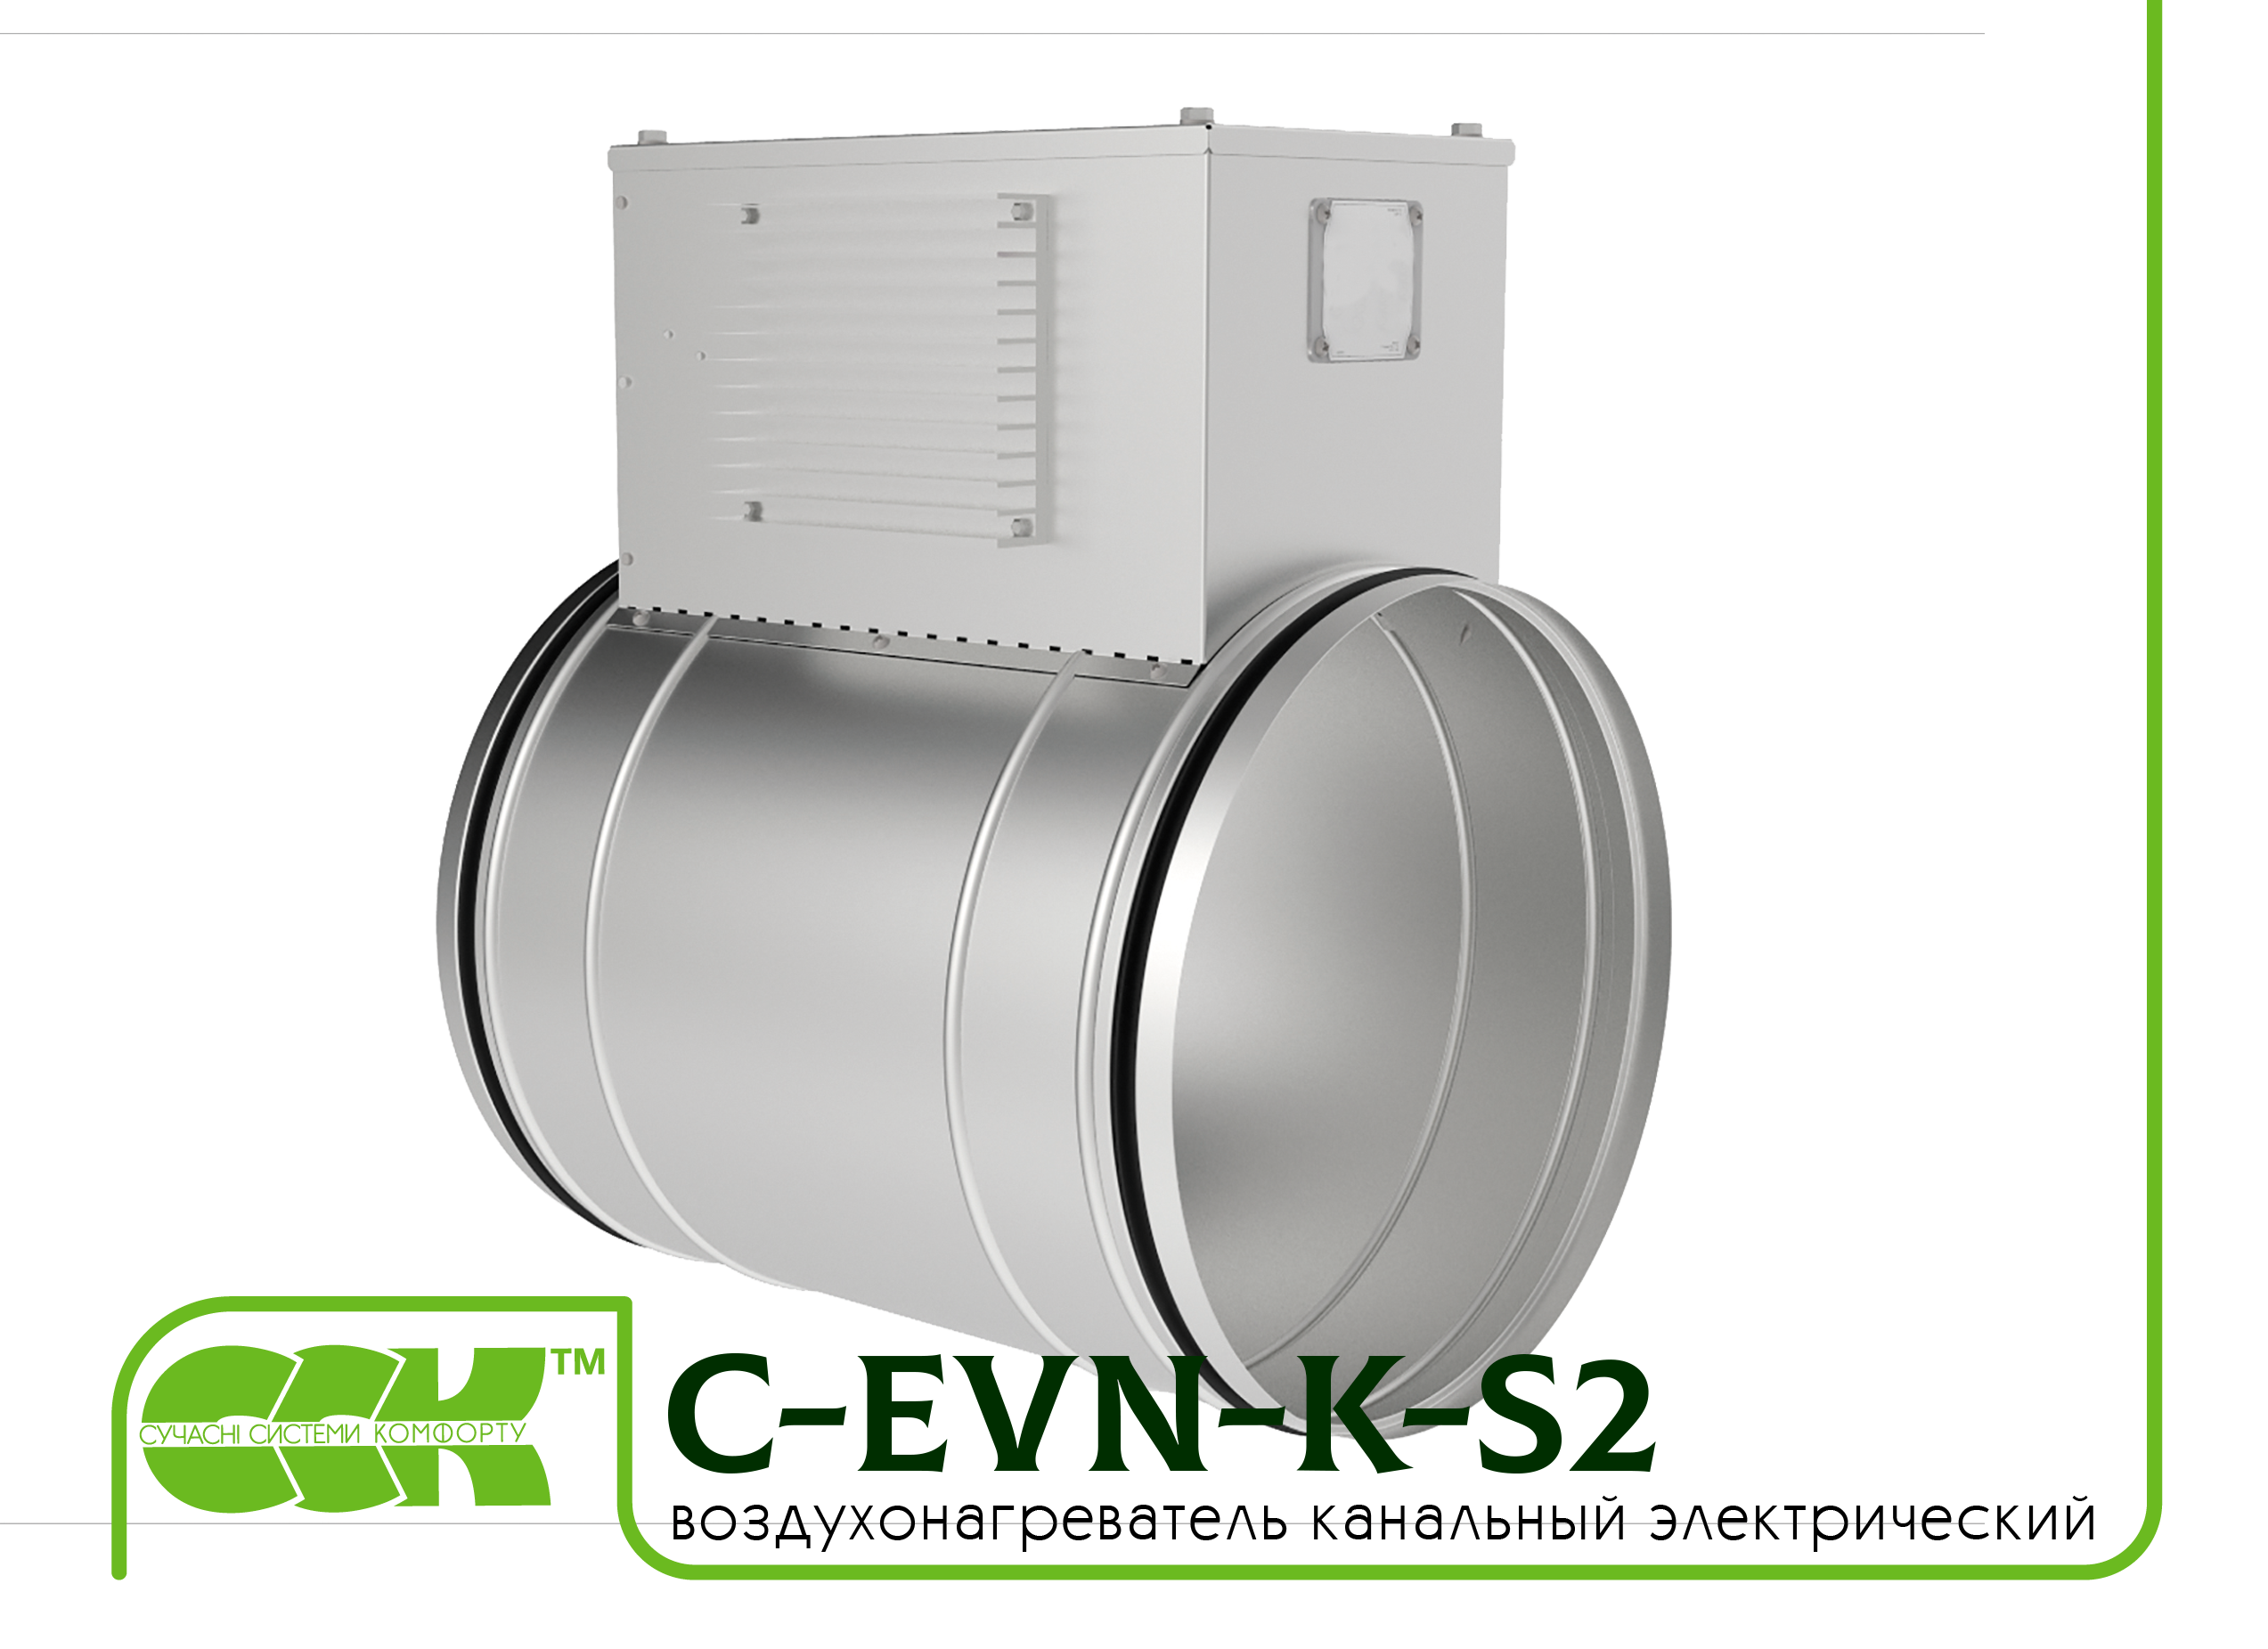 Воздухонагреватель канальный электрический для круглых каналов C-EVN-K-S2-150-4,5